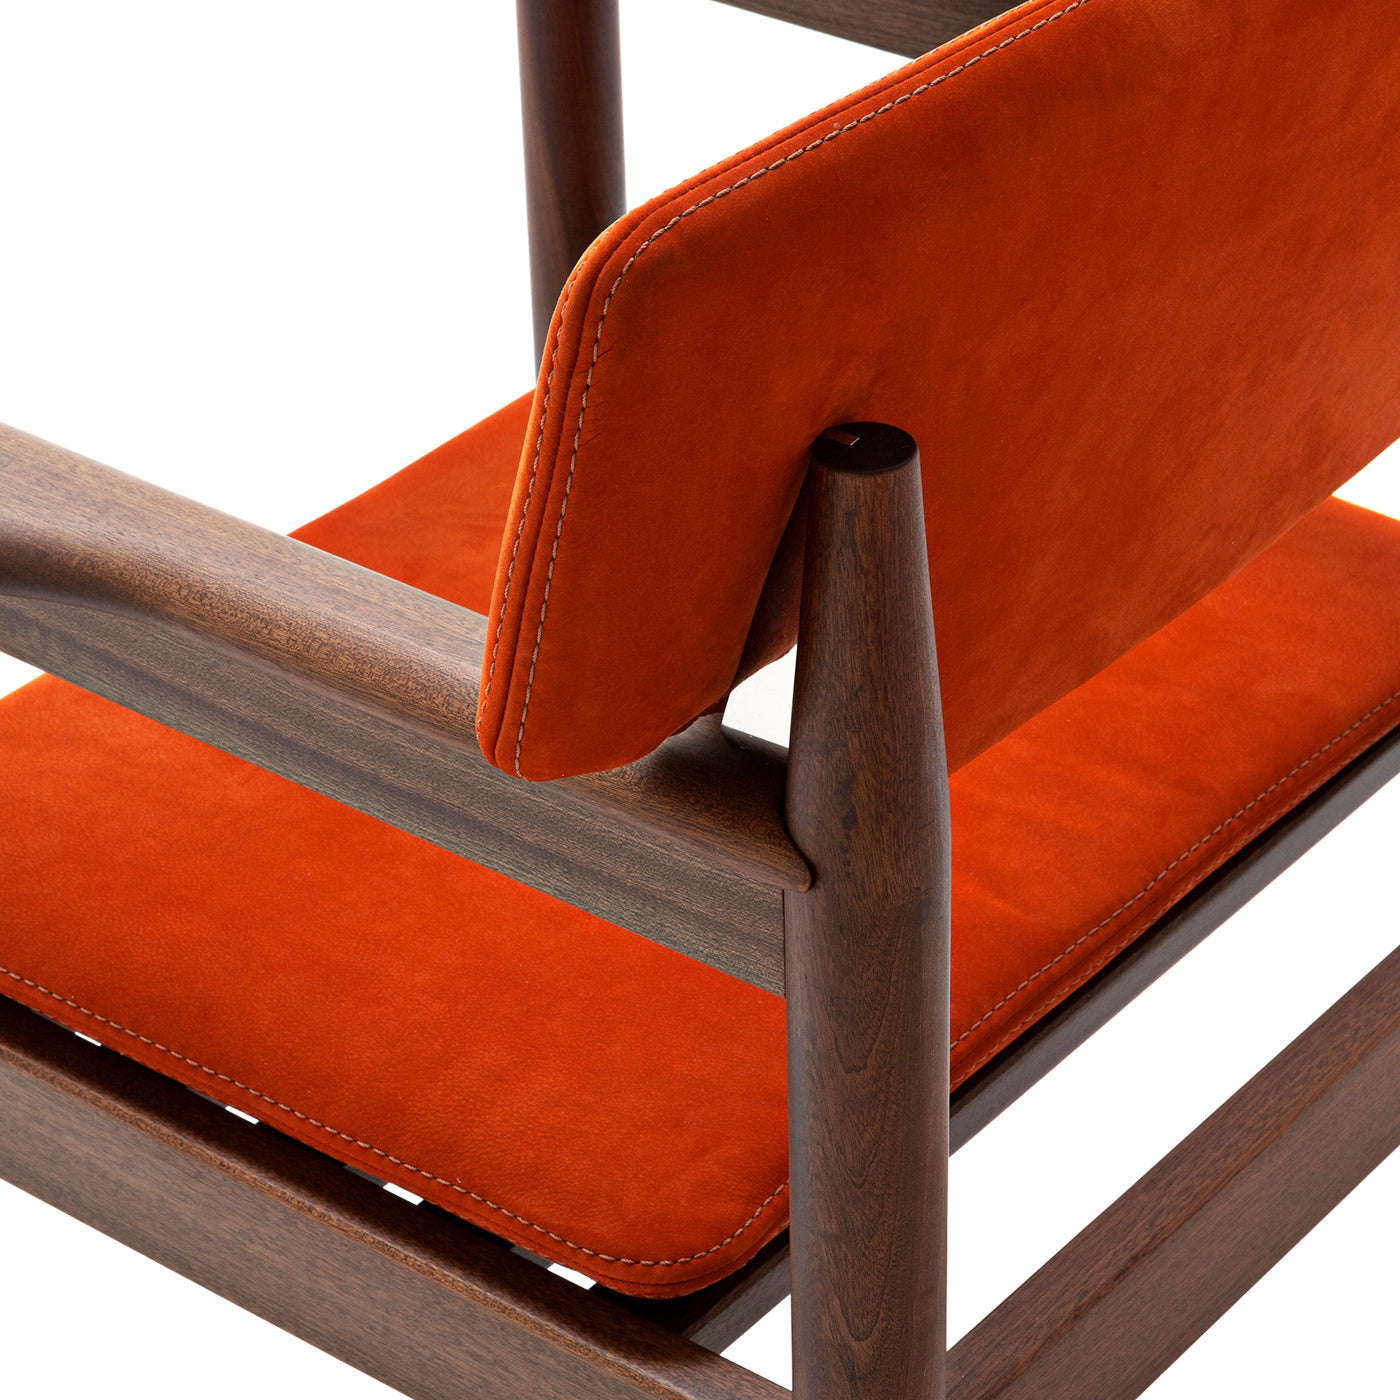 10th Vieste Chair by Massimo Castagna - Alternative view 2